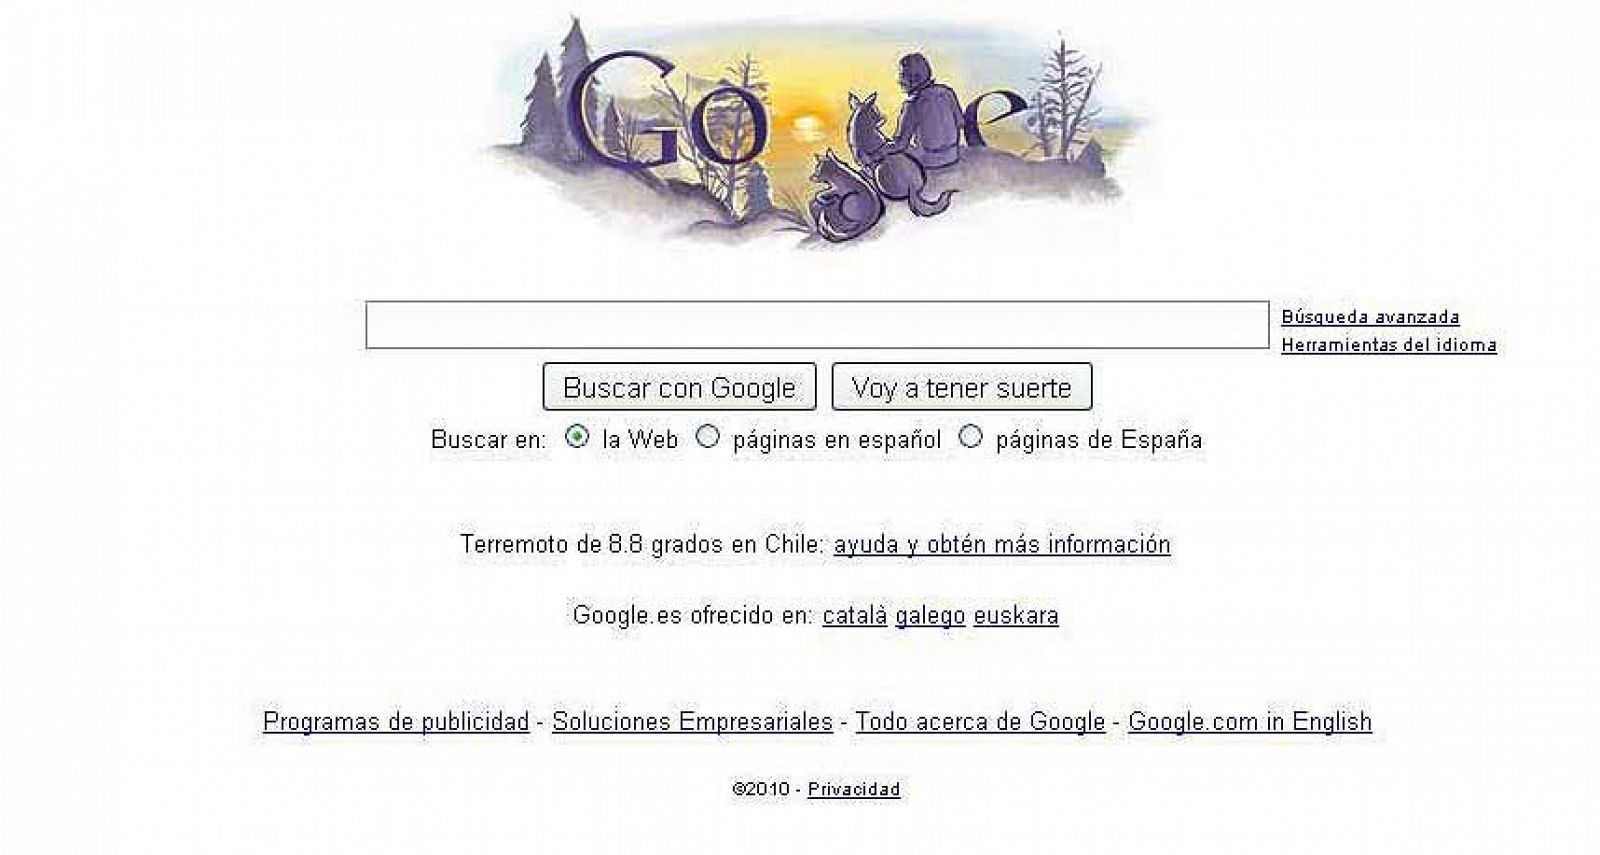 El logo de Google recuerda a Félix en el aniversario de su muerte